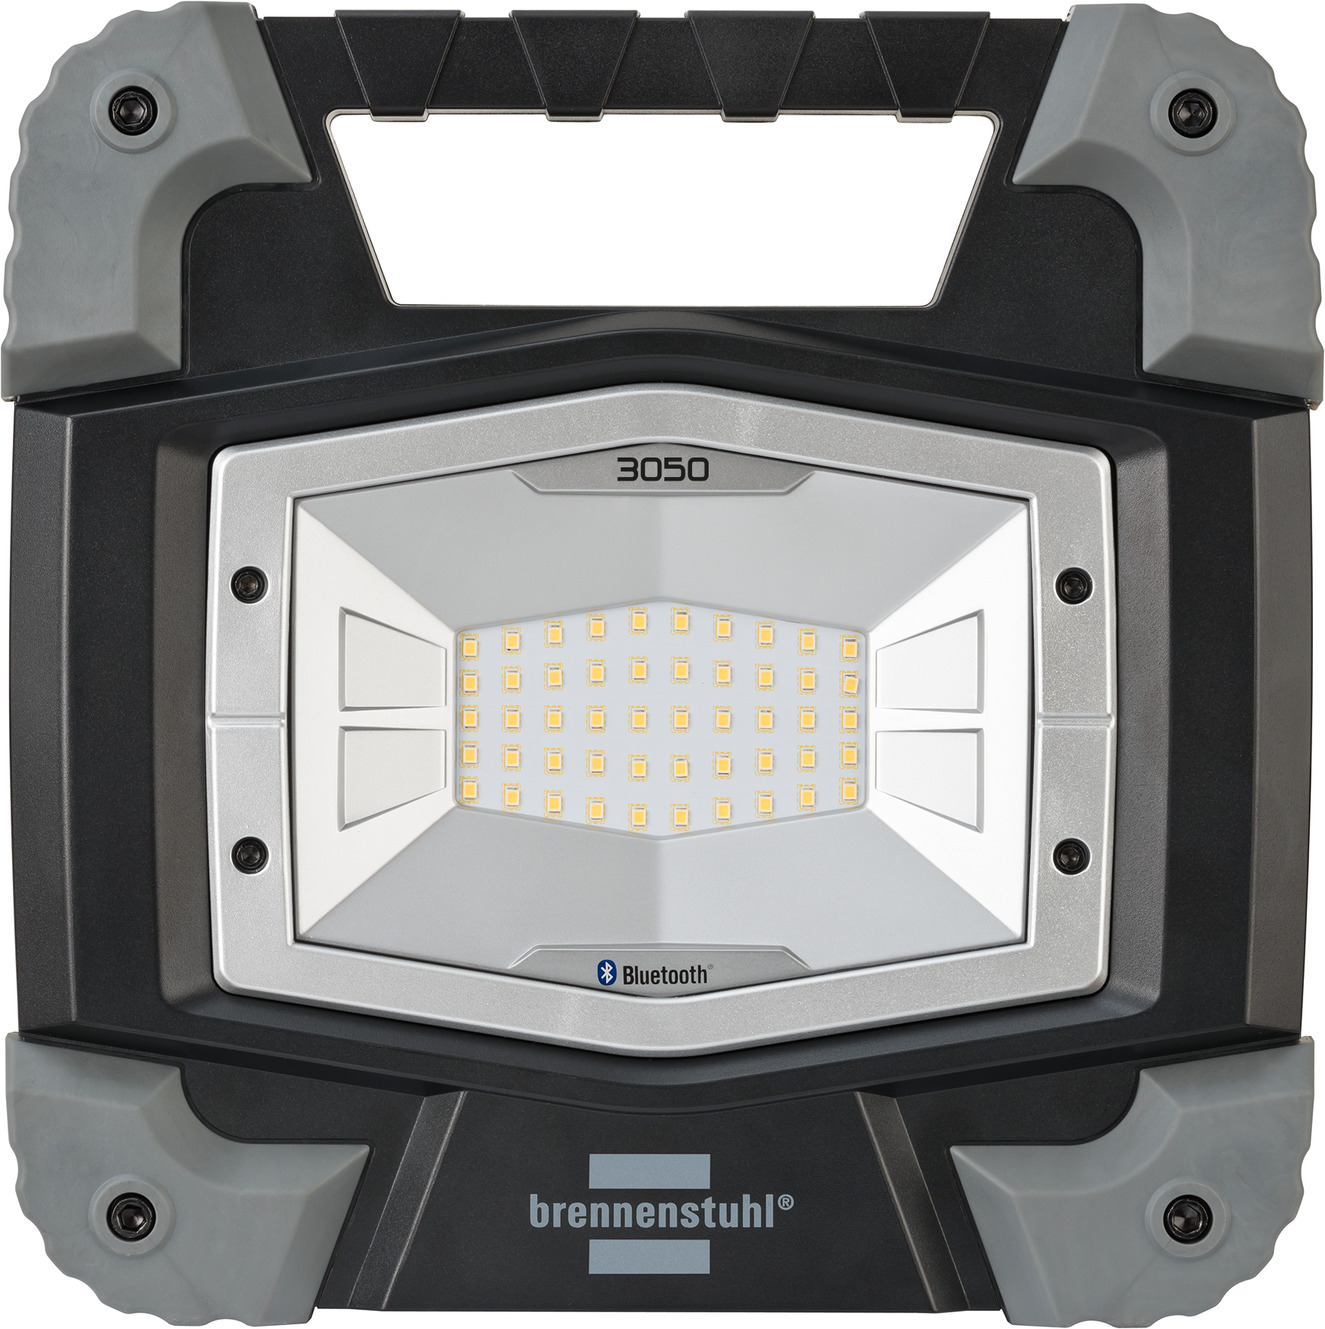 3050 brennenstuhl® mit MB Baustrahler TORAN Bluetooth LED | Lichtsteuerungs-APP